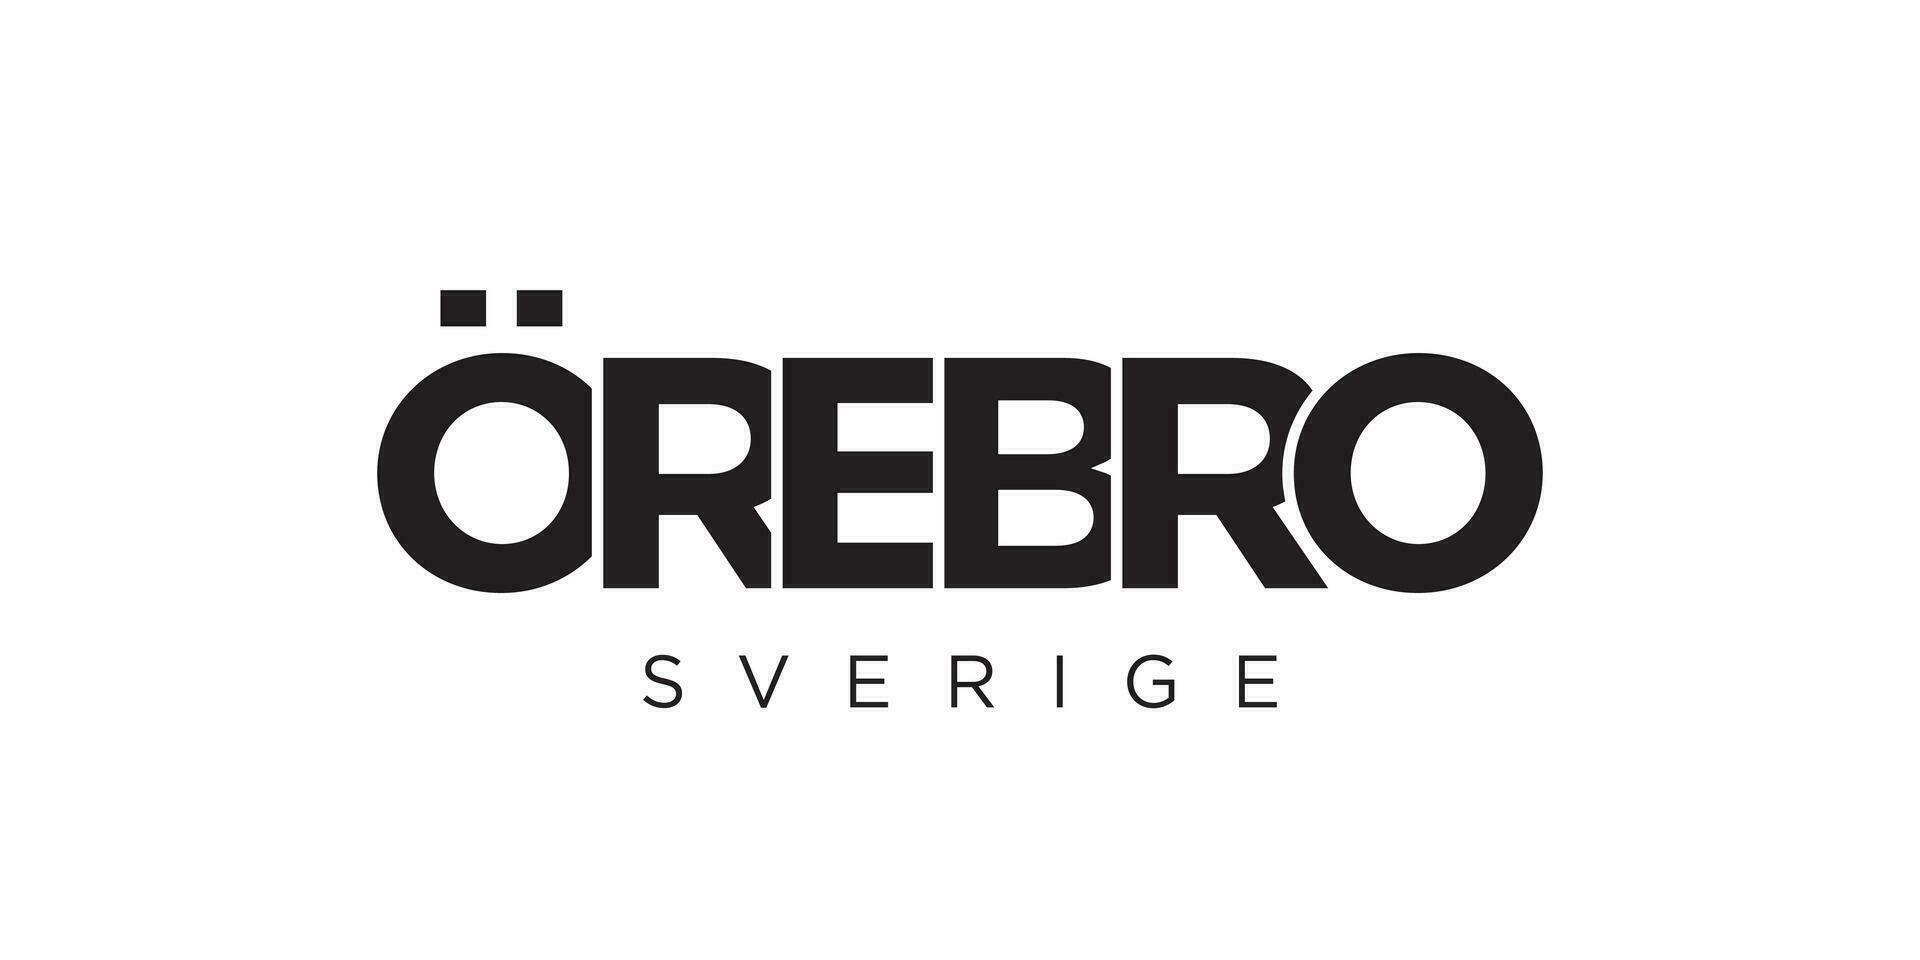 orebro im das Schweden Emblem. das Design Eigenschaften ein geometrisch Stil, Vektor Illustration mit Fett gedruckt Typografie im ein modern Schriftart. das Grafik Slogan Beschriftung.